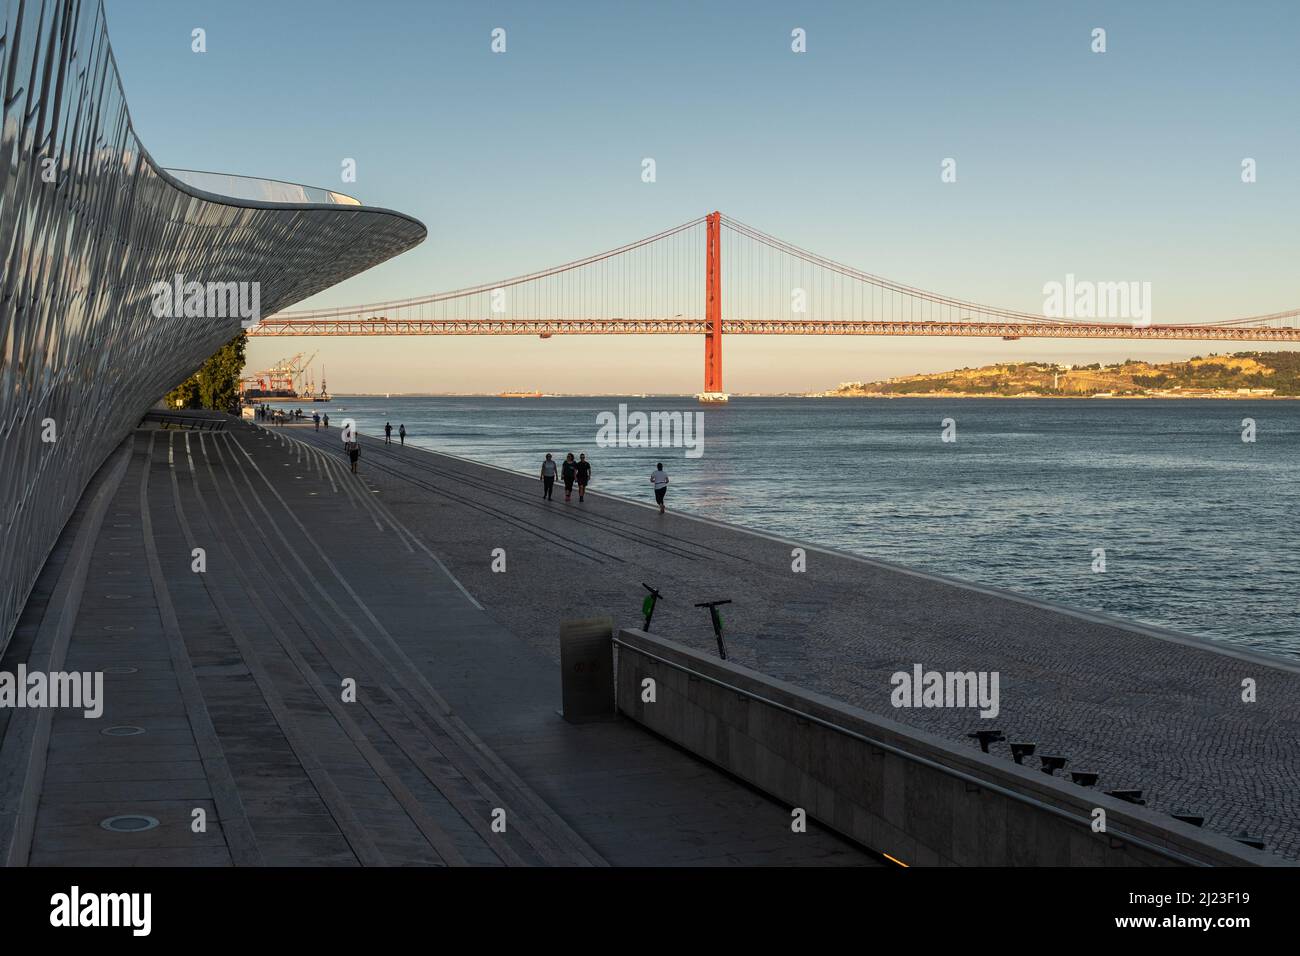 Lisbona, Portogallo: Passeggiata della gente al MAAT - Museo di Arte, architettura e tecnologia. Il fiume Tago e il ponte del 25 aprile sullo sfondo. Foto Stock